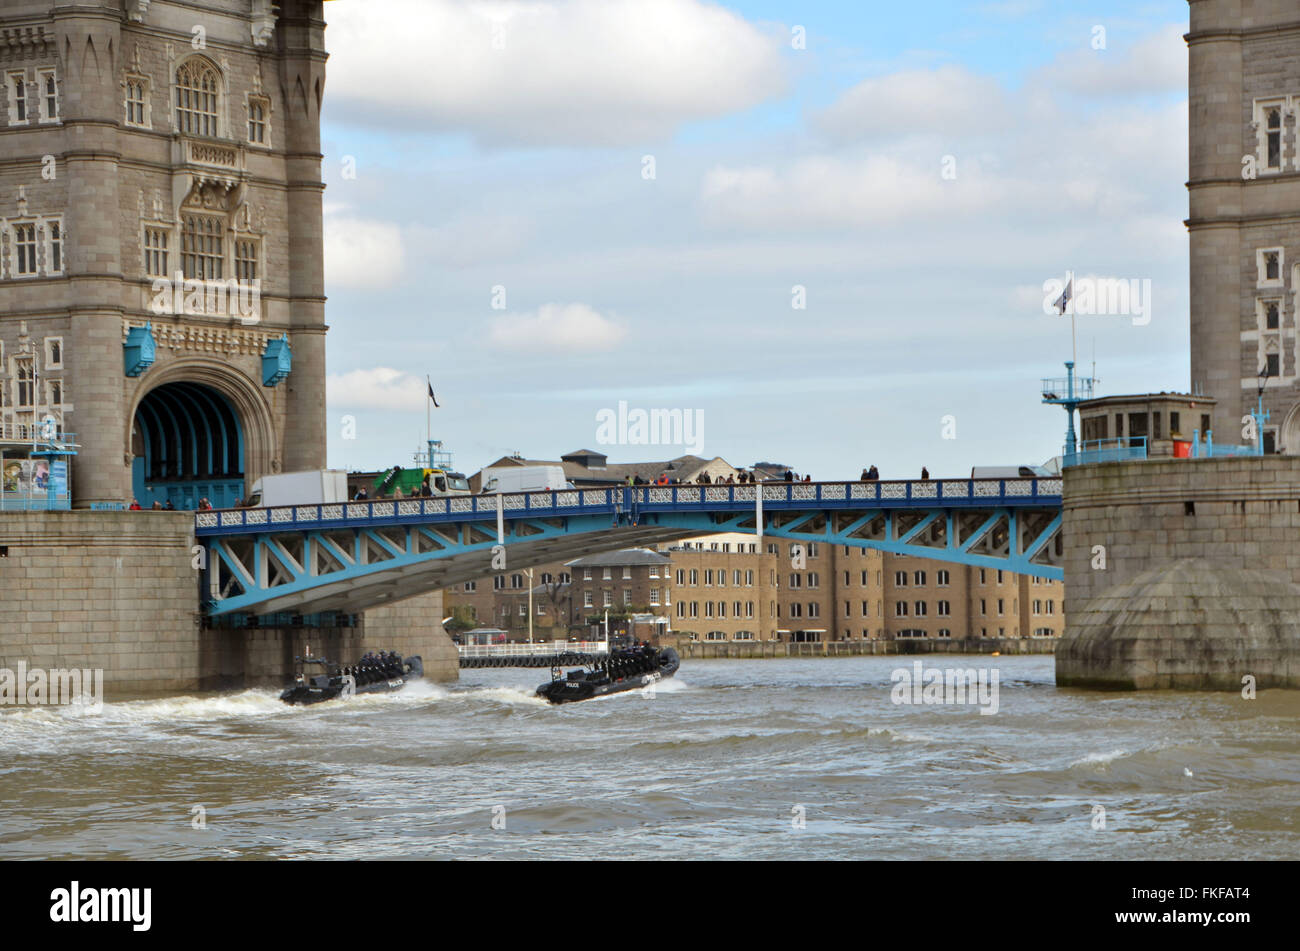 London, UK, 8. März 2016, Metropolitan Police high-Speed Jet-Engine starren Inflatable Boat (RIB) unterquert Tower Bridge. Bildnachweis: JOHNNY ARMSTEAD/Alamy Live-Nachrichten Stockfoto